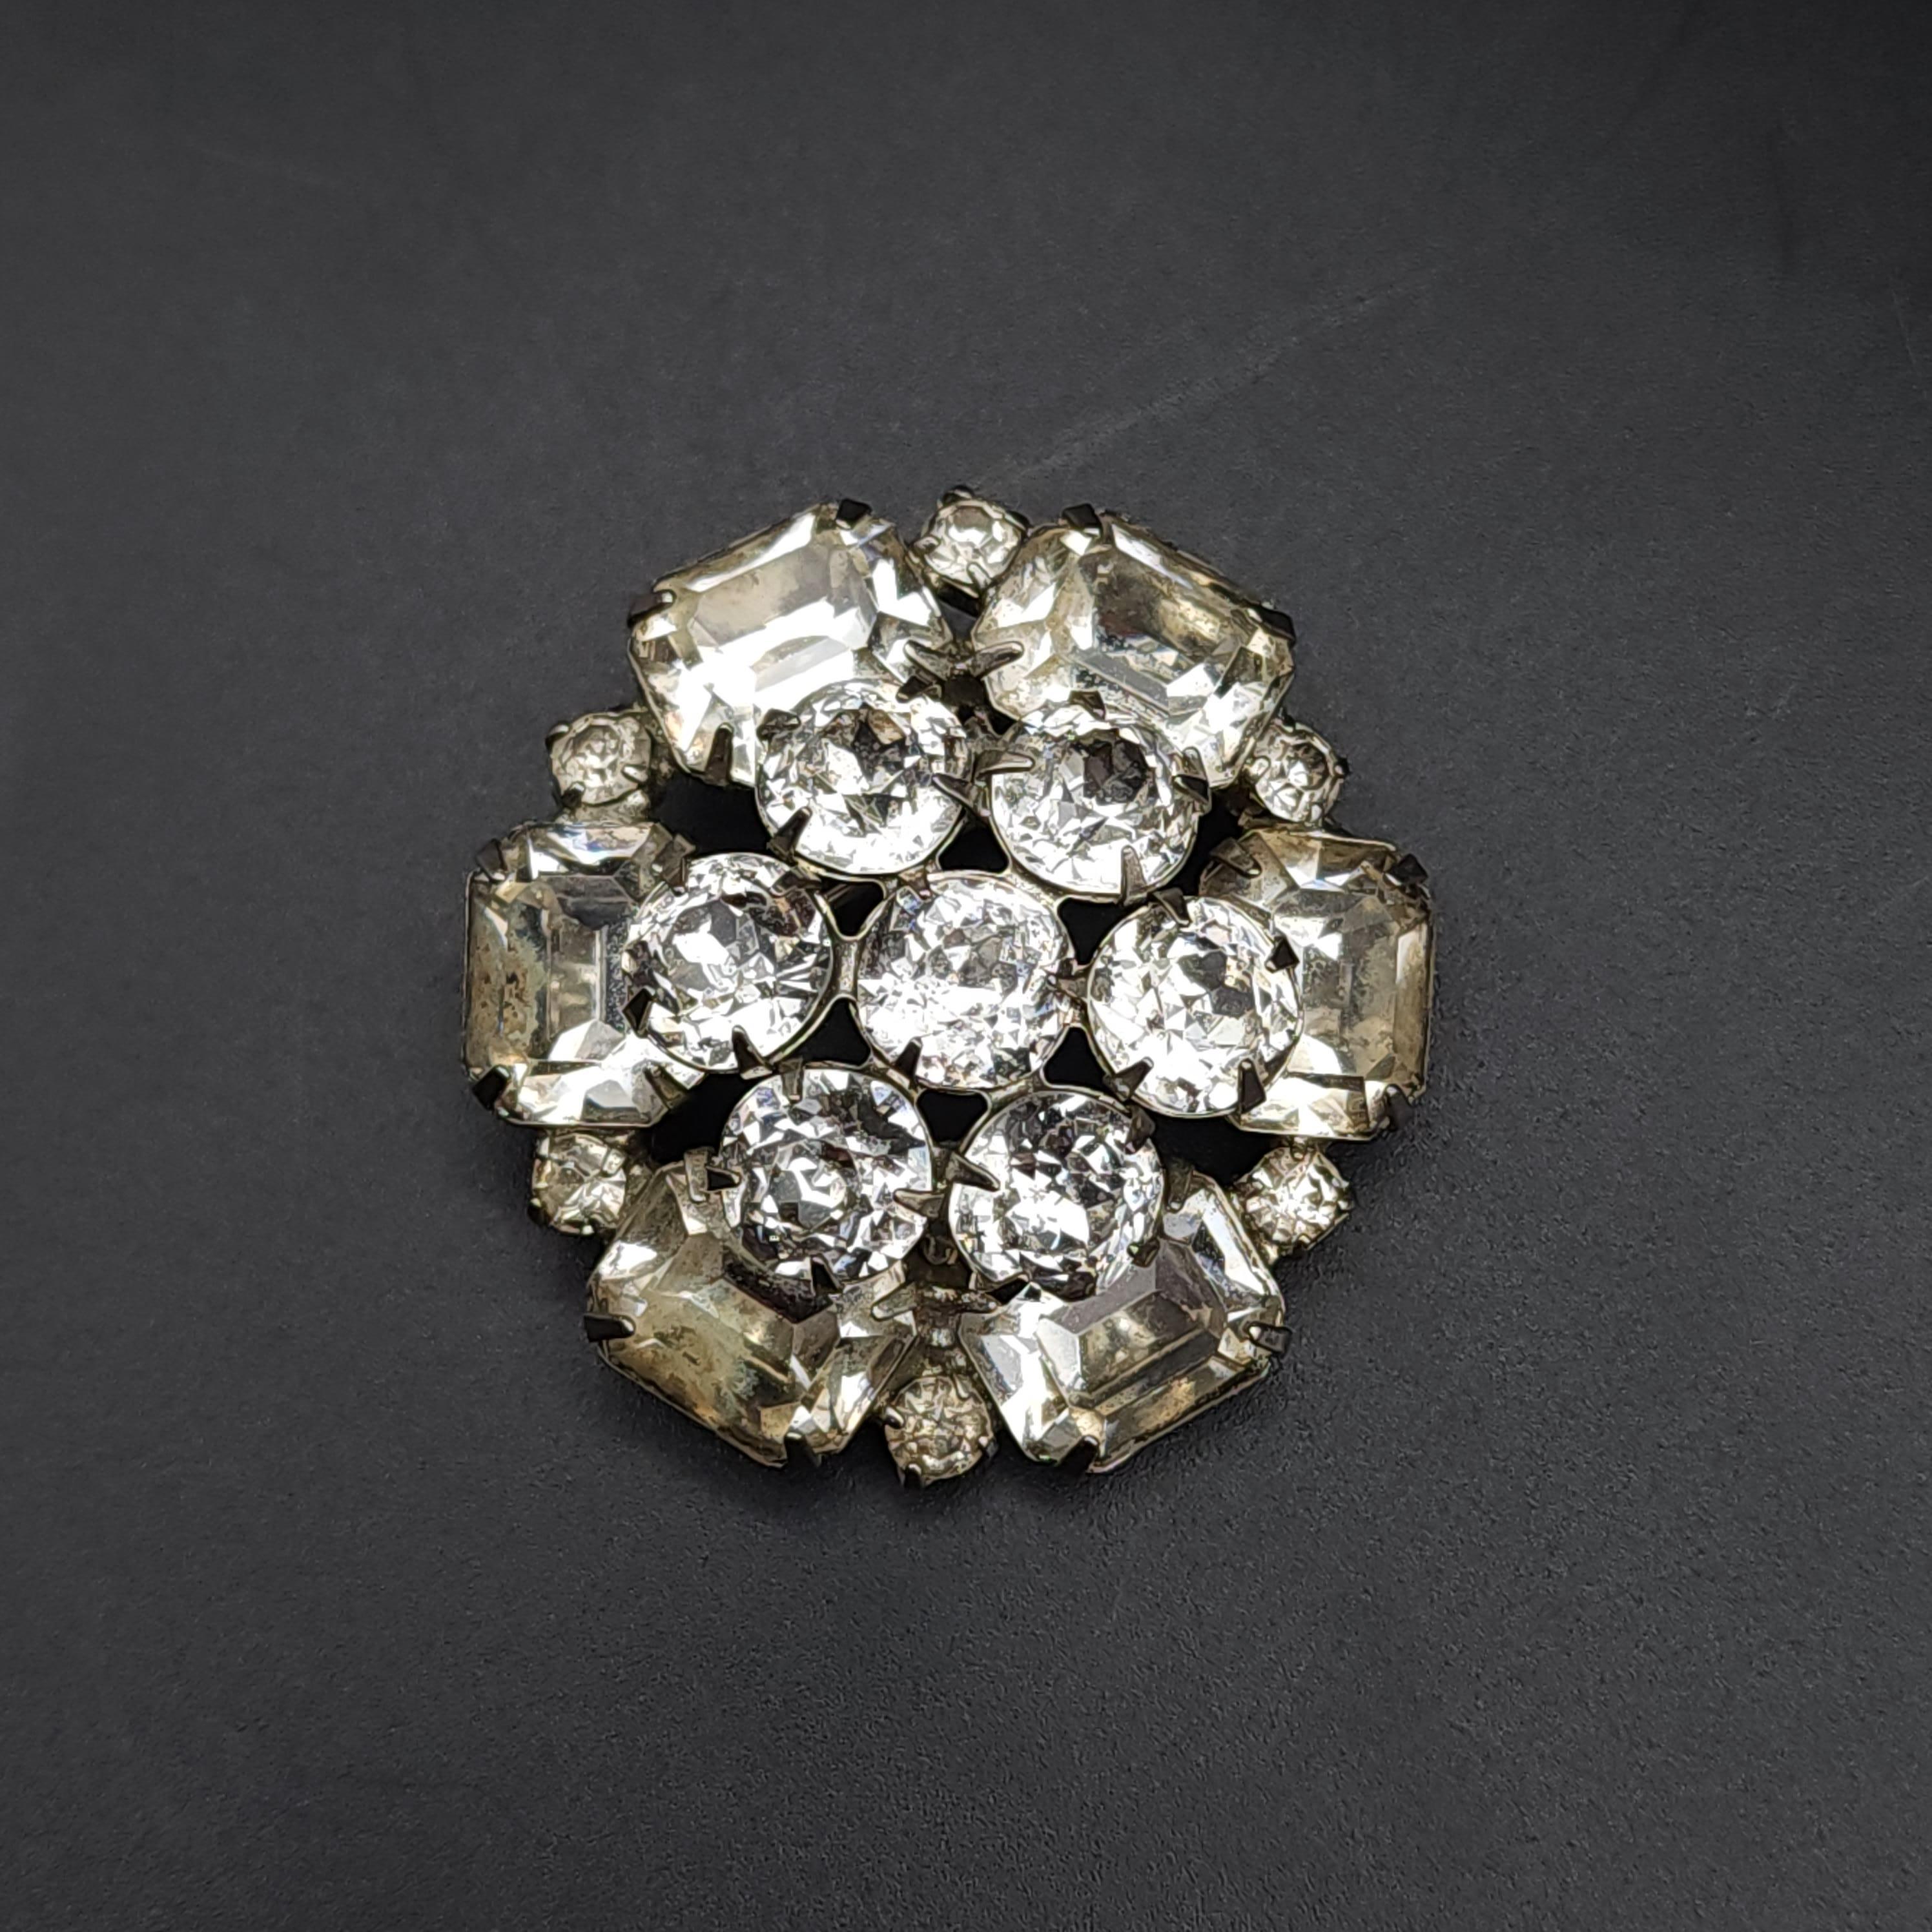 Größe: 4 cm / 1,5 in
Silber-Ton
Klare Kristalle

Mit dieser exquisiten, vom Art déco inspirierten Brosche aus den 1970er Jahren werden Sie in die Vergangenheit zurückversetzt. Diese runde Brosche präsentiert eine Reihe von klaren Kristallen im